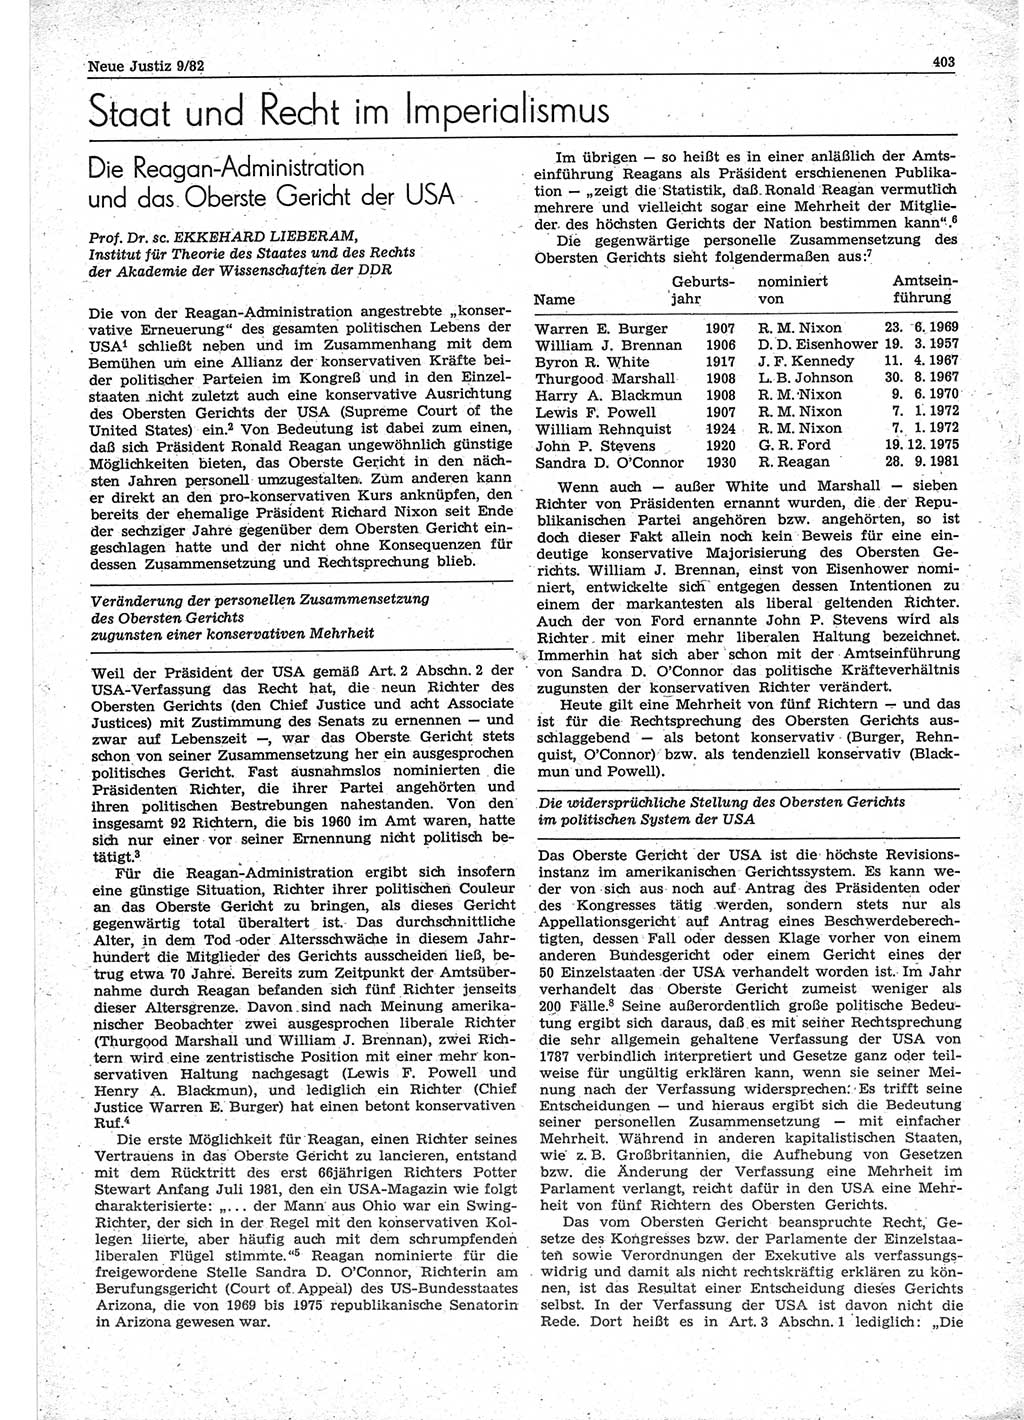 Neue Justiz (NJ), Zeitschrift für sozialistisches Recht und Gesetzlichkeit [Deutsche Demokratische Republik (DDR)], 36. Jahrgang 1982, Seite 403 (NJ DDR 1982, S. 403)